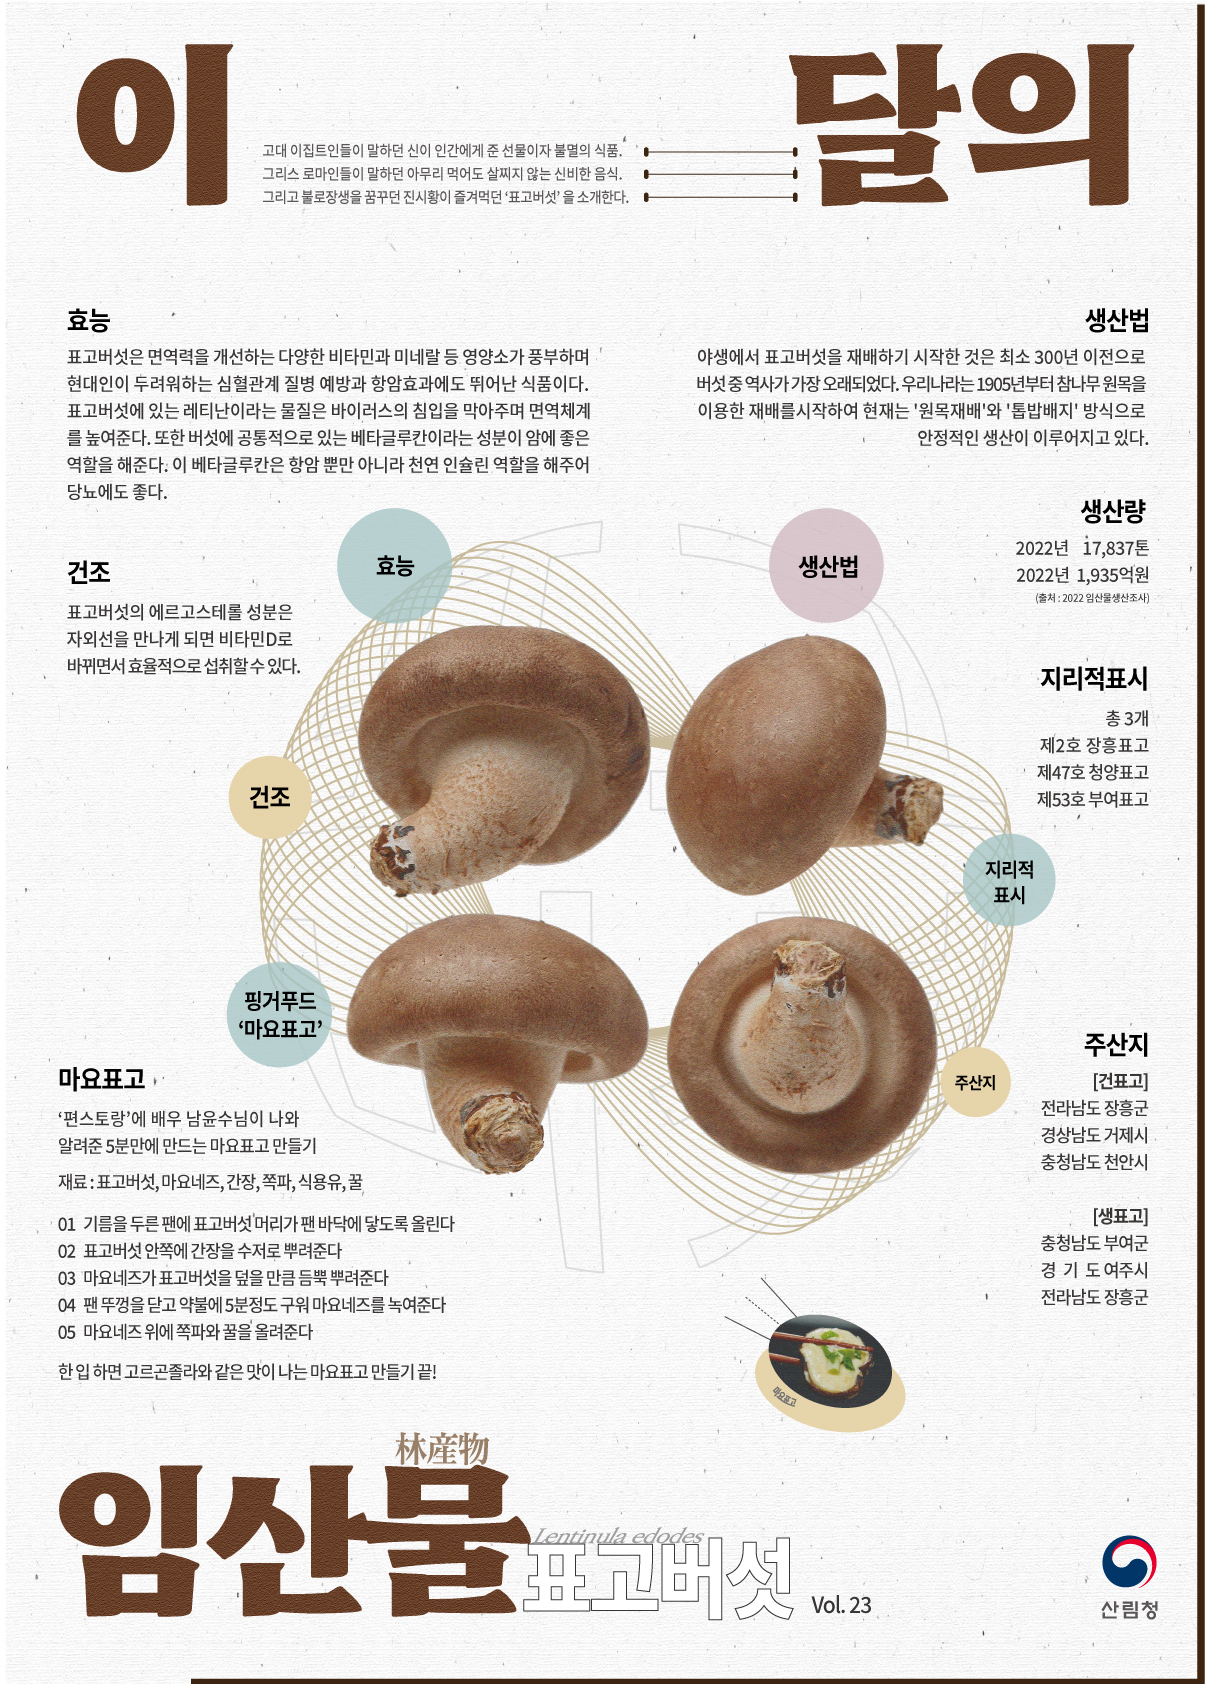 이 달의 임산물표고버섯.jpg